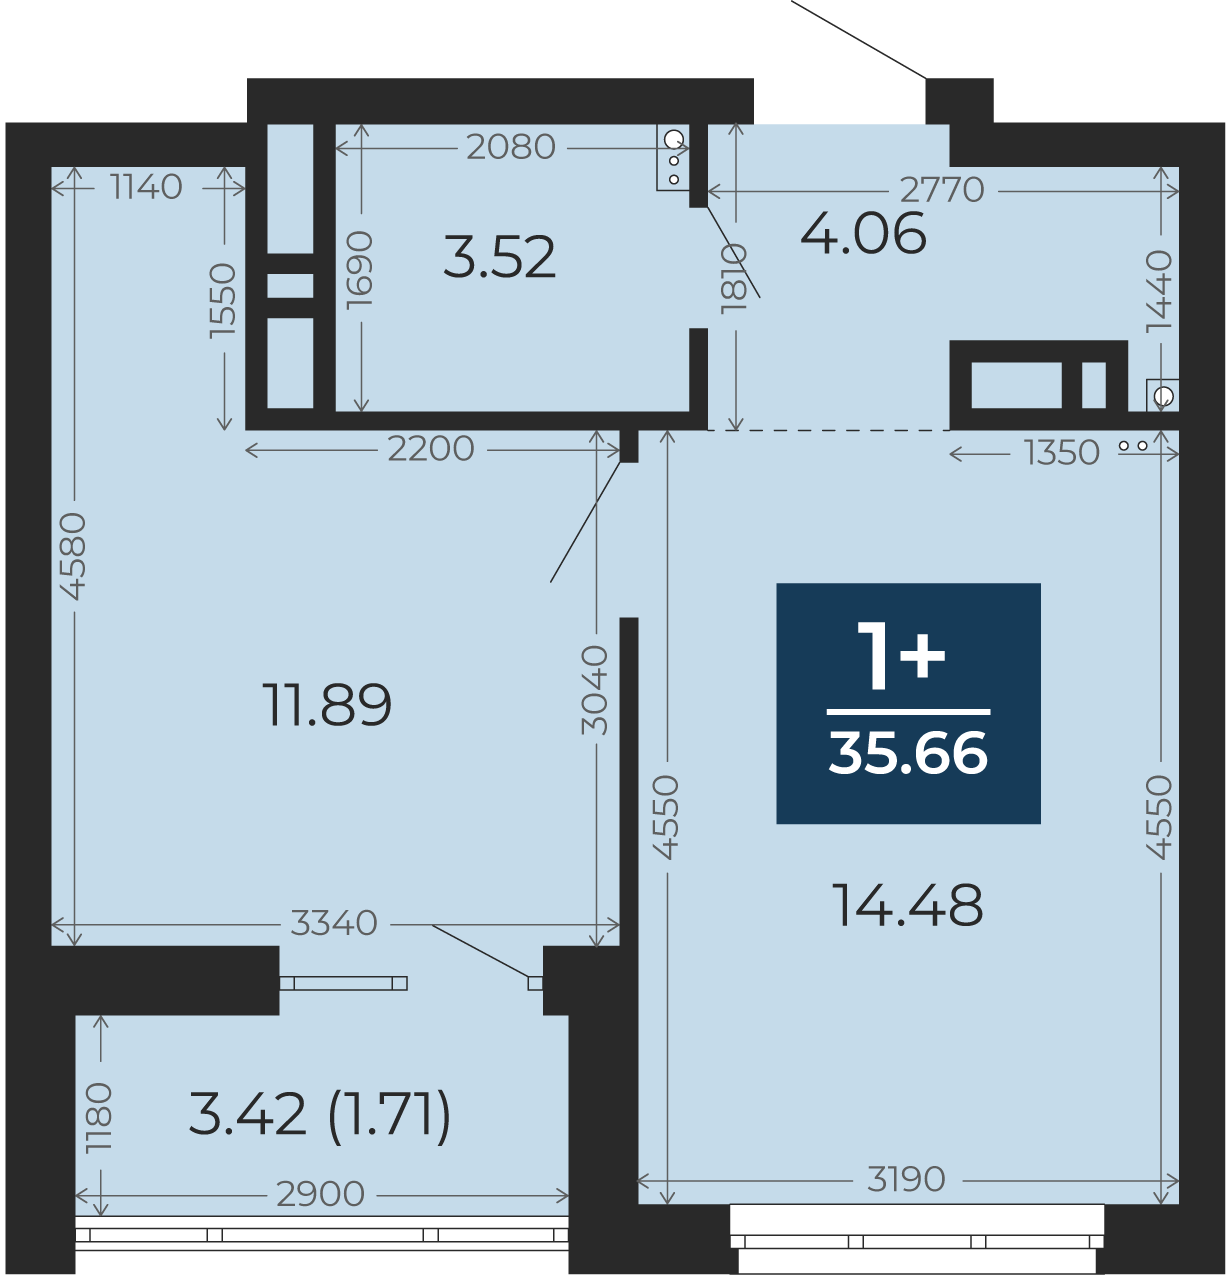 Квартира № 95, 1-комнатная, 35.66 кв. м, 13 этаж